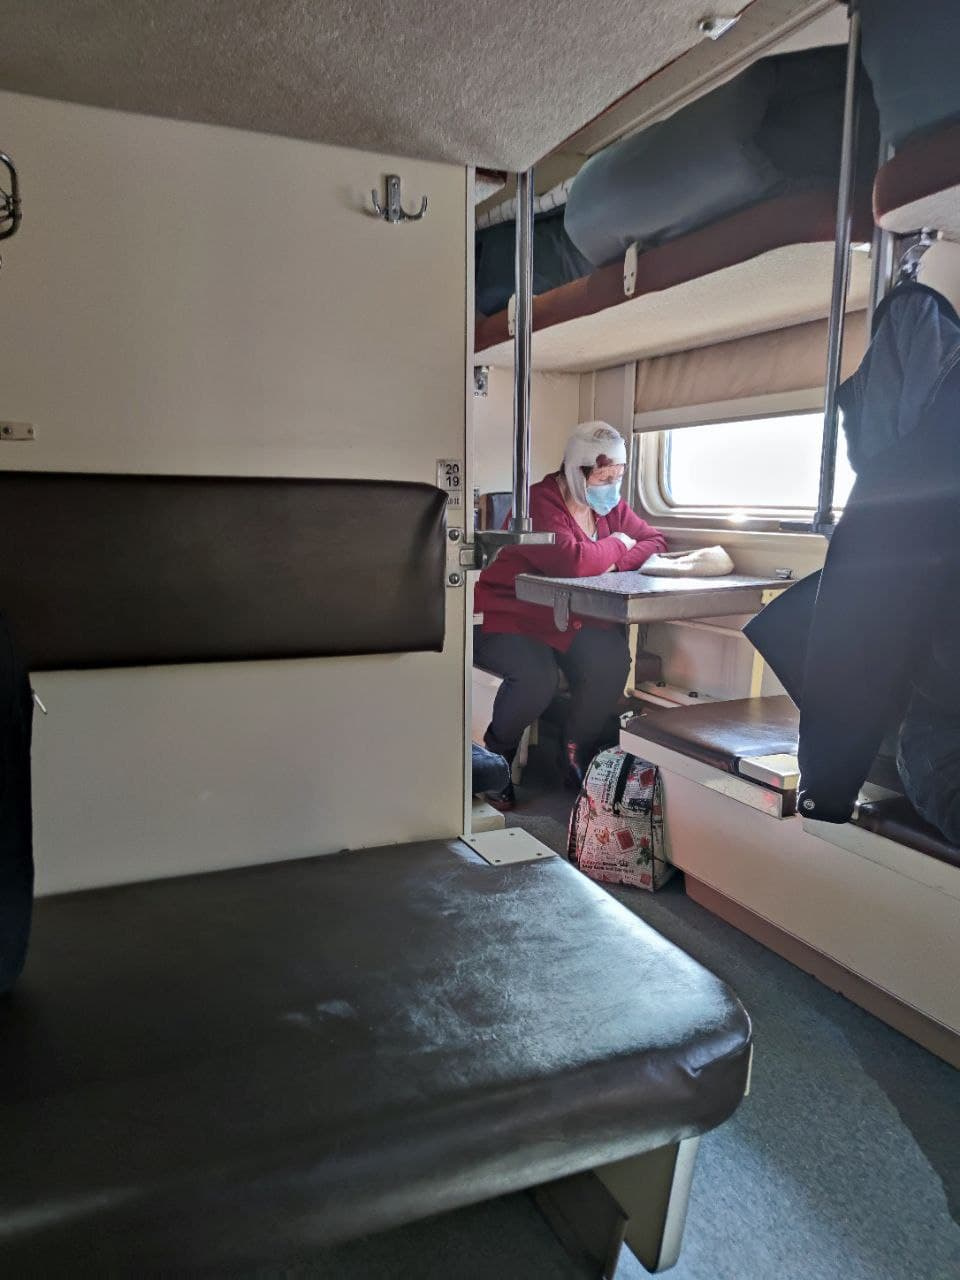 Поезд 120в белгород санкт петербург фото